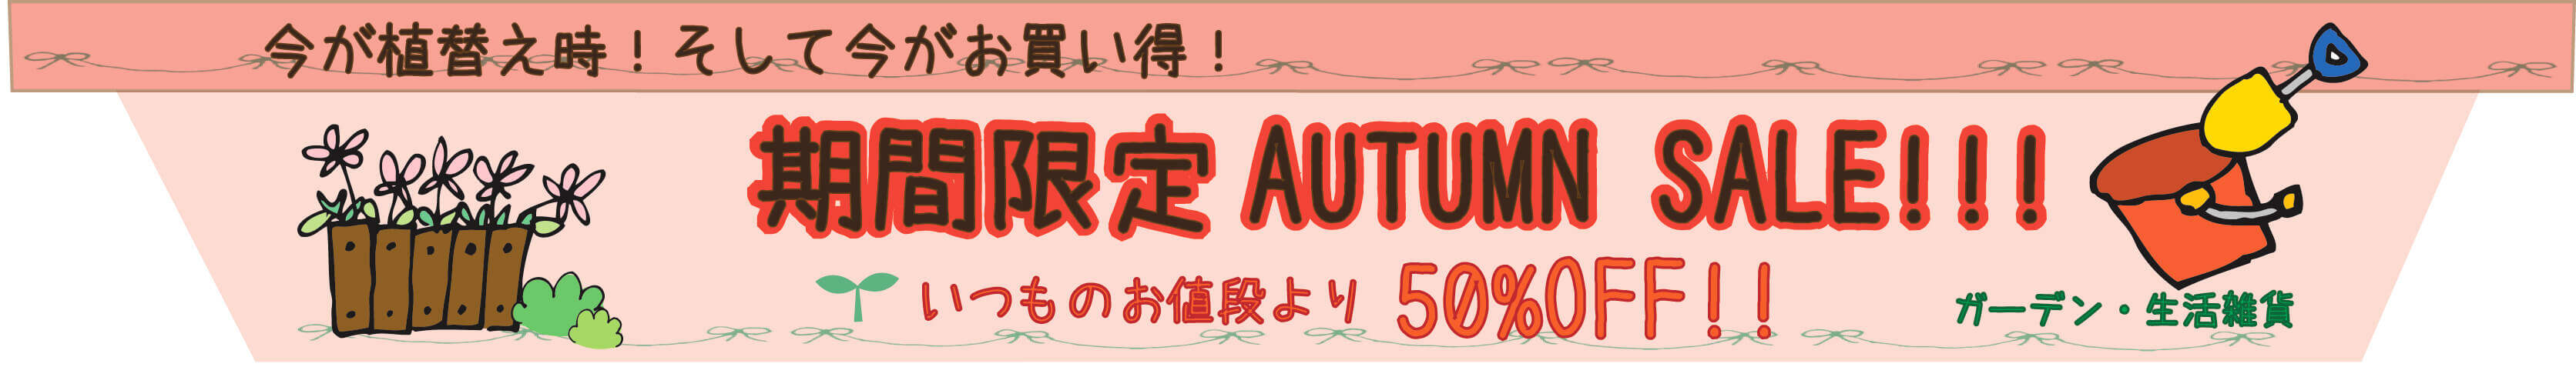 autumn sale oi[805*120